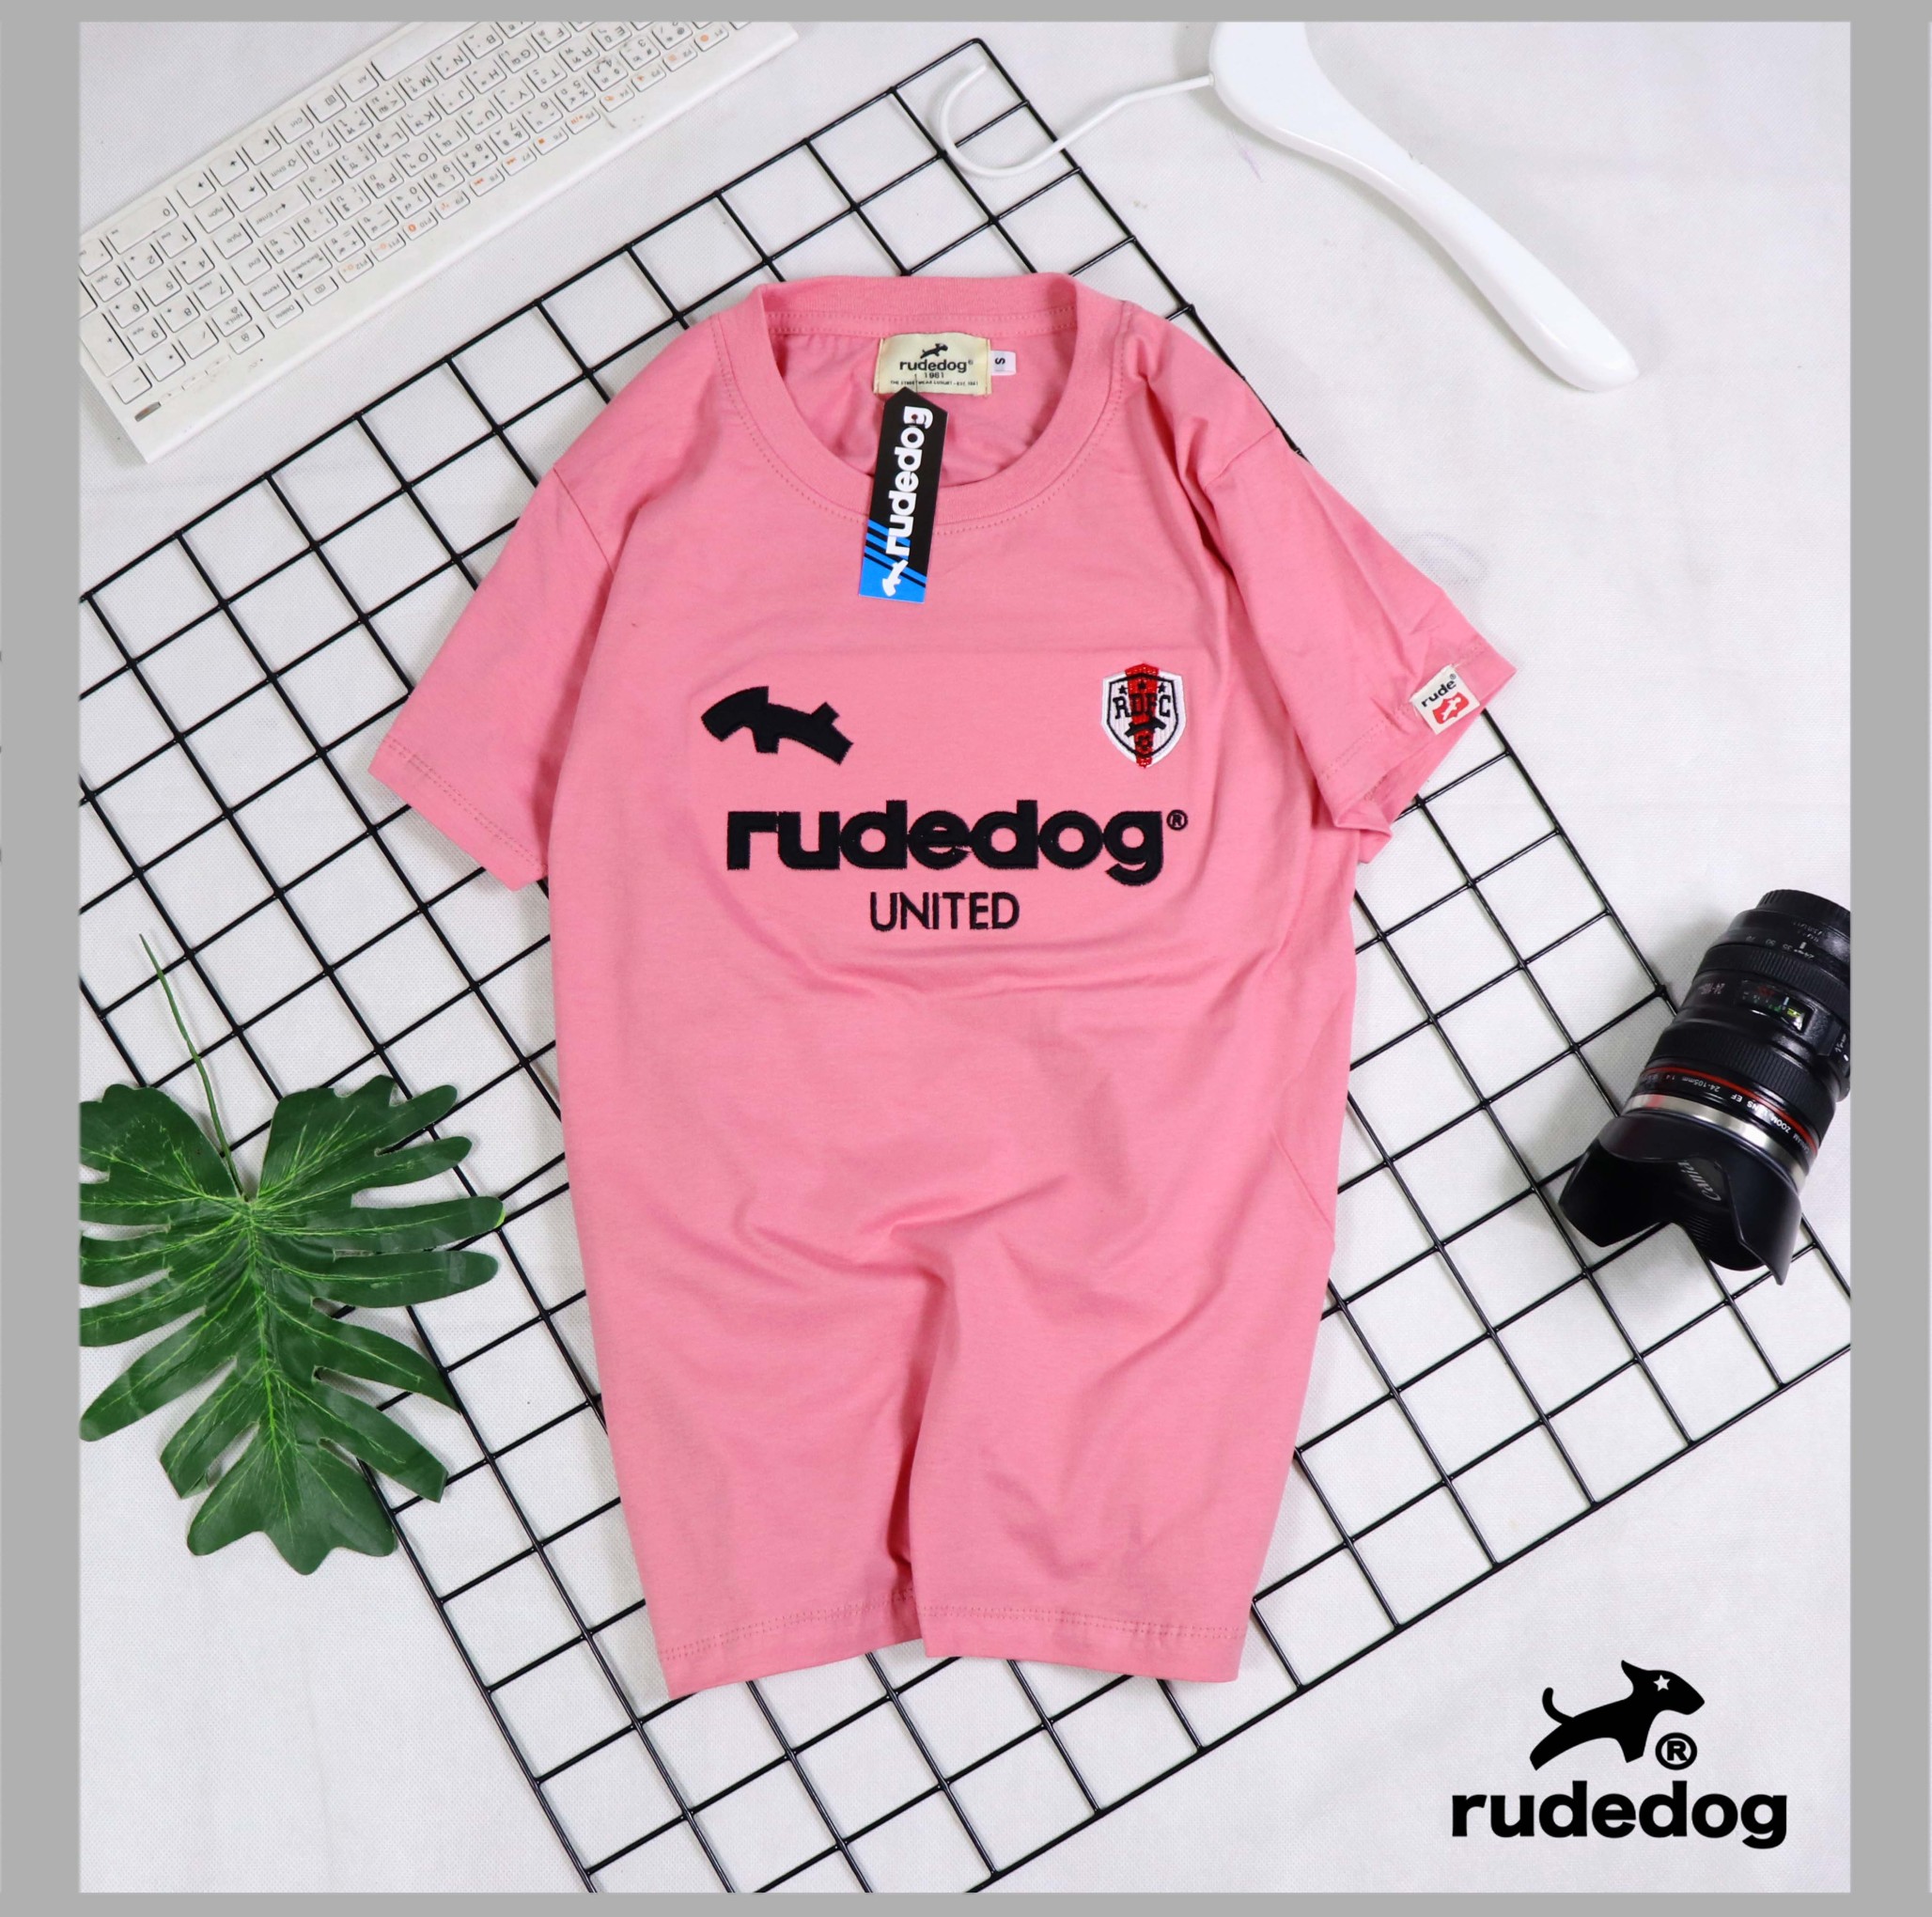 เสื้อยืดคอกลม เสื้อแขนสั้นชายหญิง Rudedog มือ1ใหม่งานป้ายใส่นุ่มสบายระบายผ้าค็อตต้อลแท้ ไซค์S M Lมีหลายสีให้เลือก สินค้าตรงปกพร้อมจัดส่ง